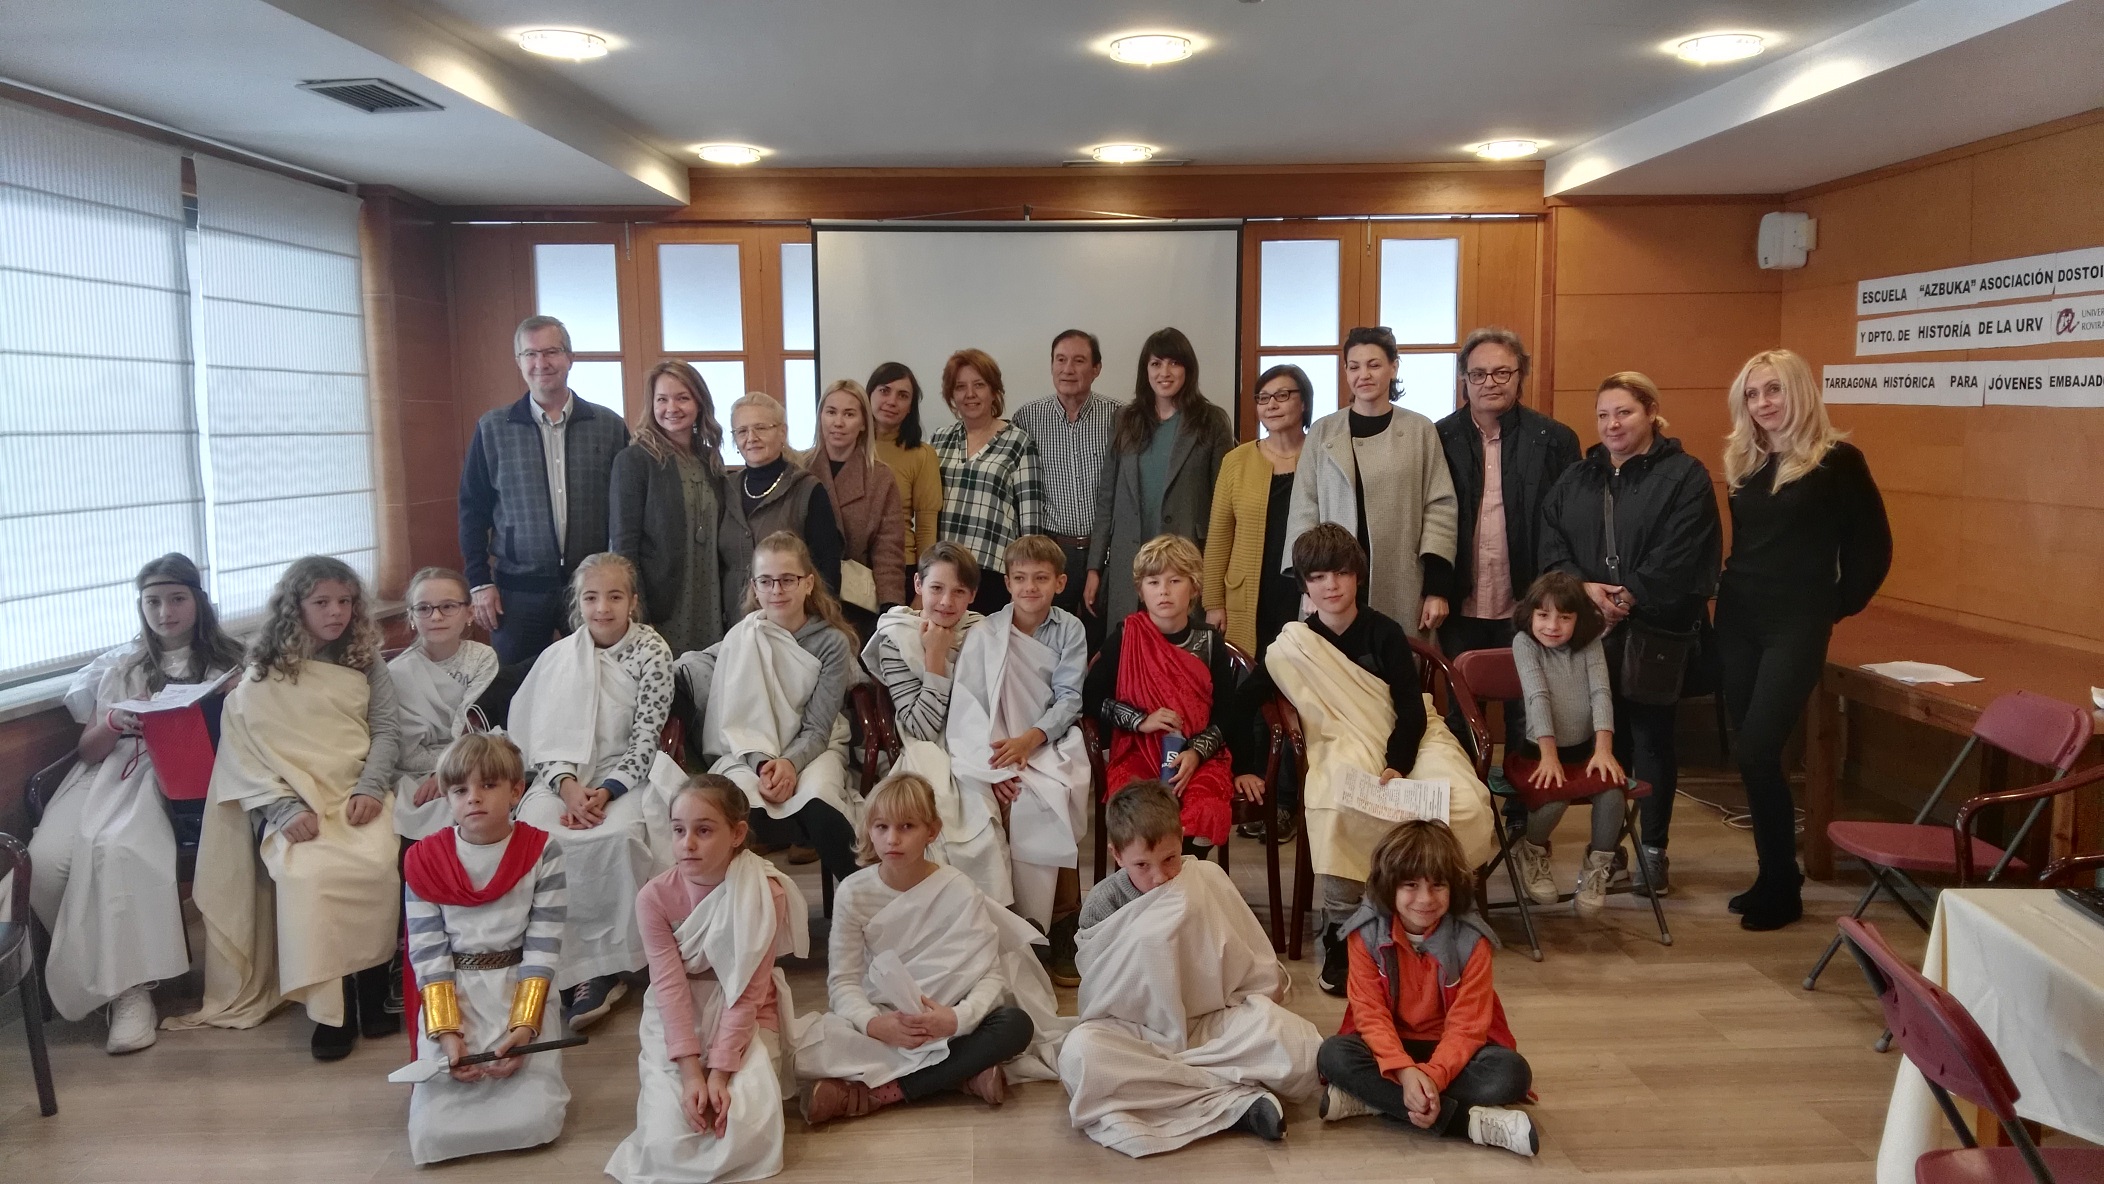 Proyecto "Tarragona histórica para jóvenes embajadores"